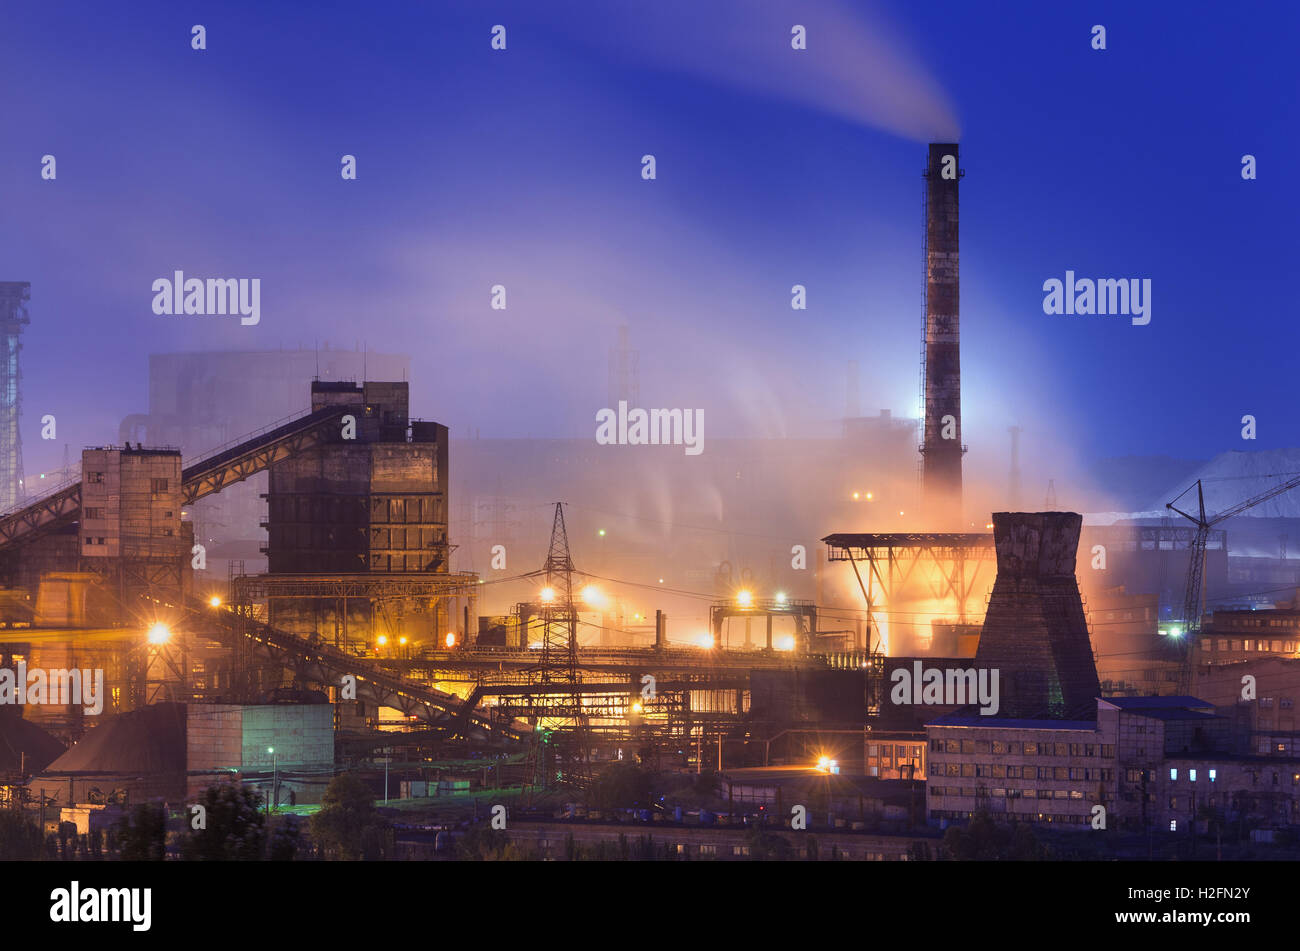 Usine métallurgique de nuit. Les cheminées d'usine avec de l'acier. Steelworks, iron works. L'industrie lourde en Europe. La pollution de l'air fr Banque D'Images